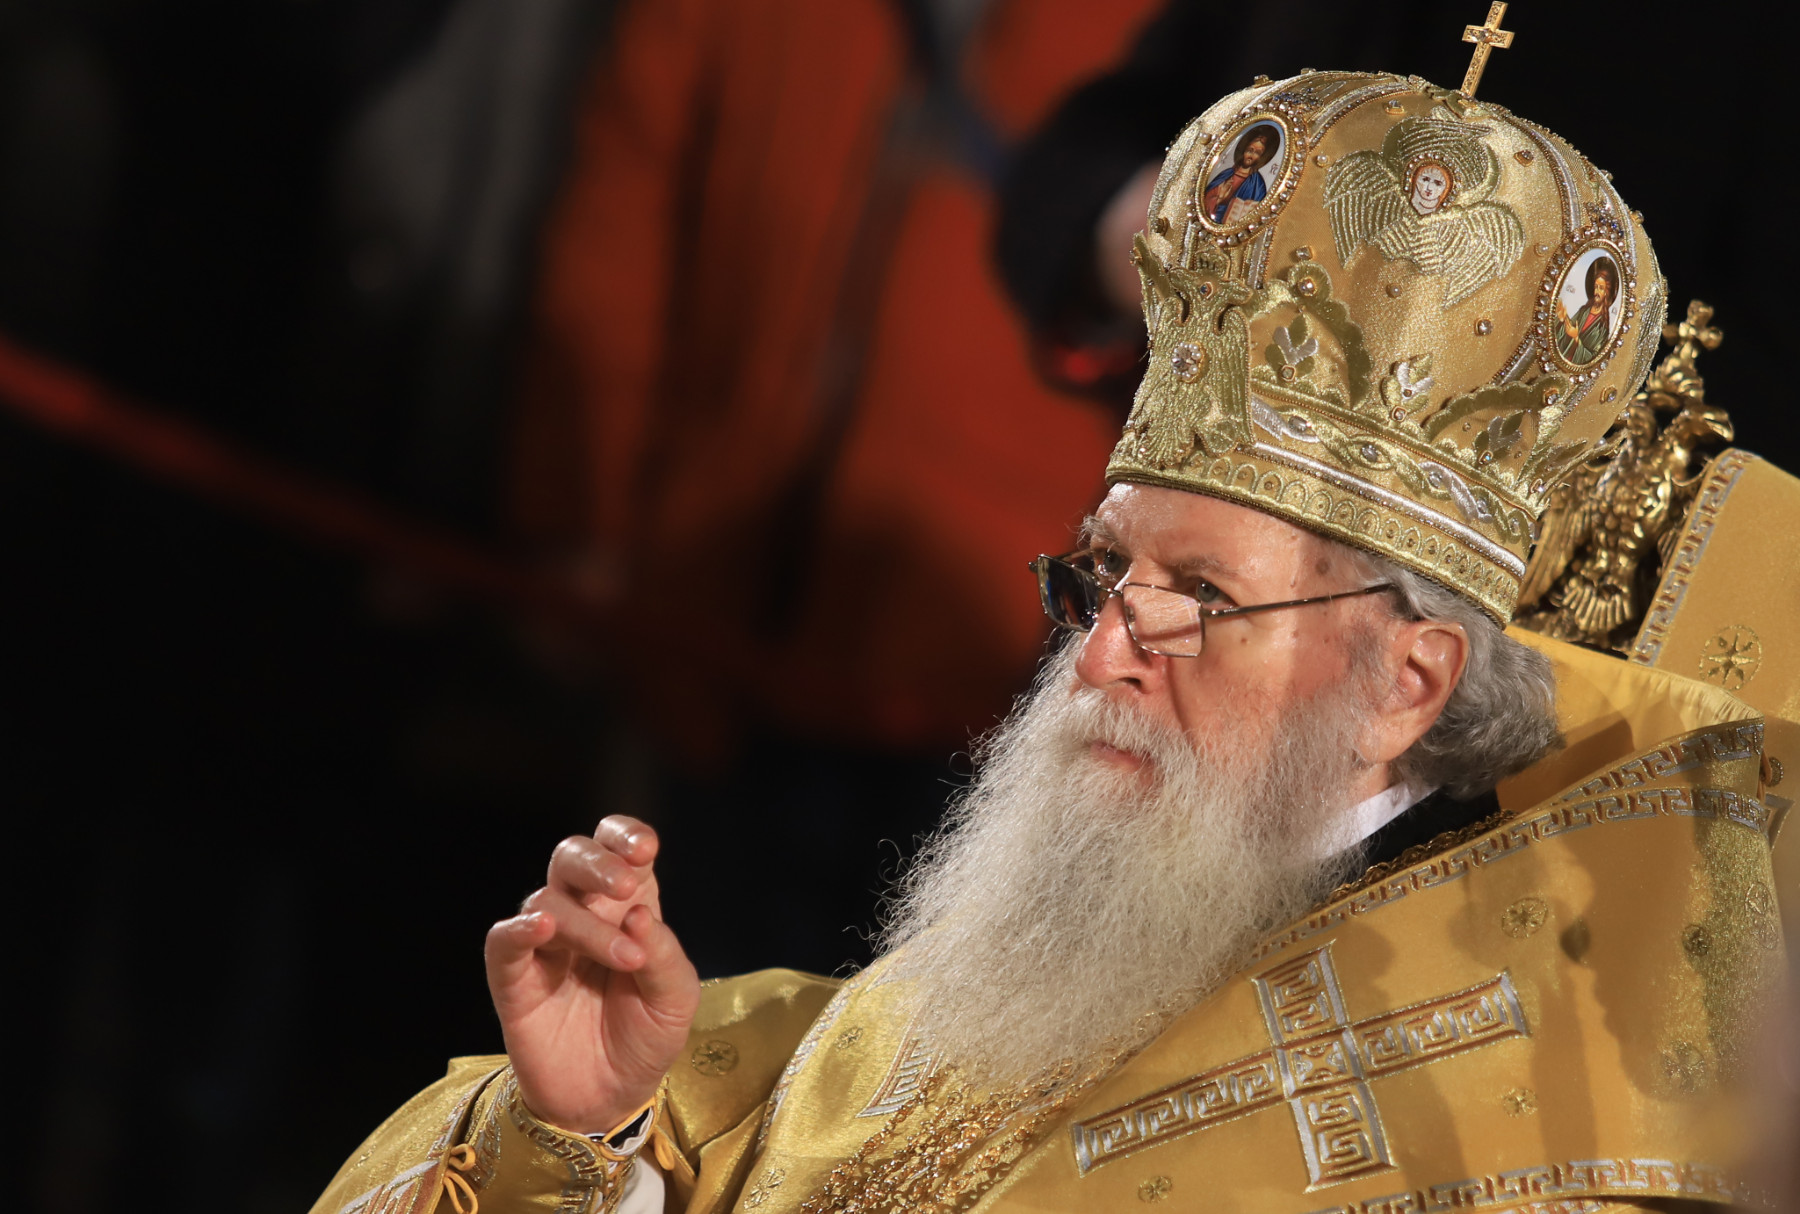 Патриарх Неофит ще отбележи 76-я си рожден ден в уединение и молитва